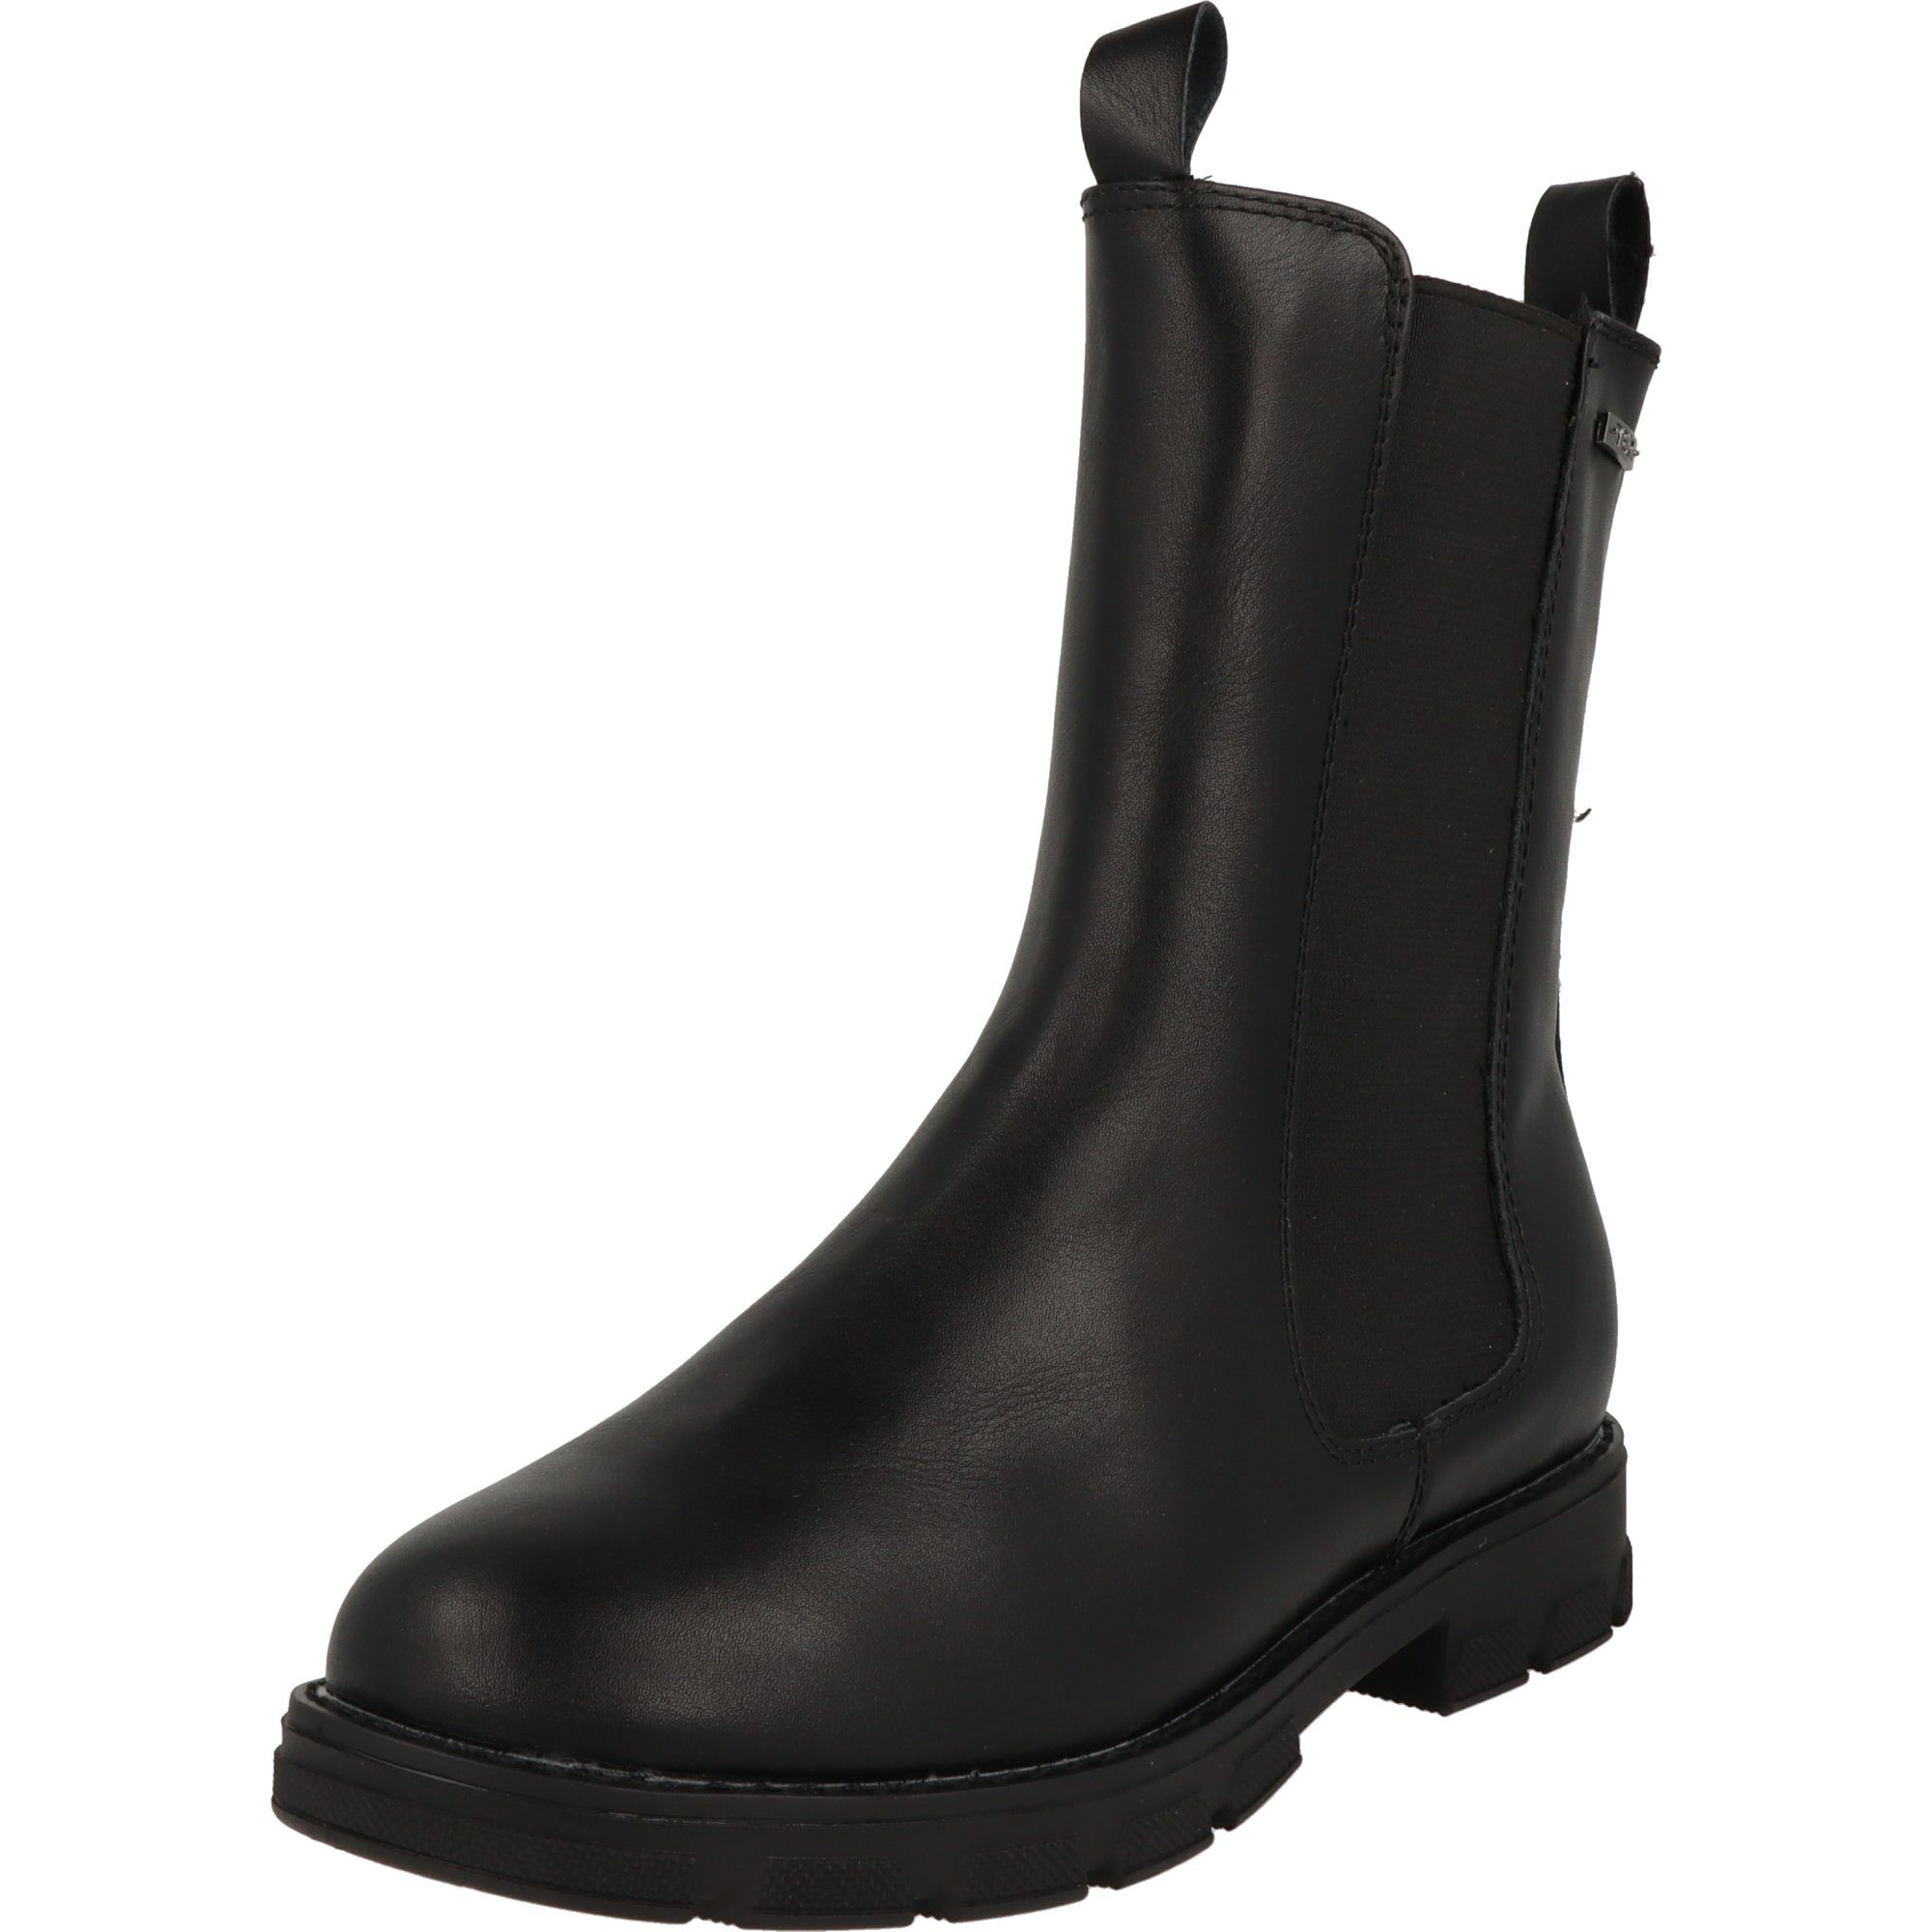 Indigo Mädchen Schuhe Chelsea Tex Boots Stiefel 454-142 Schwarz  Winterstiefel Wasserabweisend, Reißverschluss auf der Innenseite